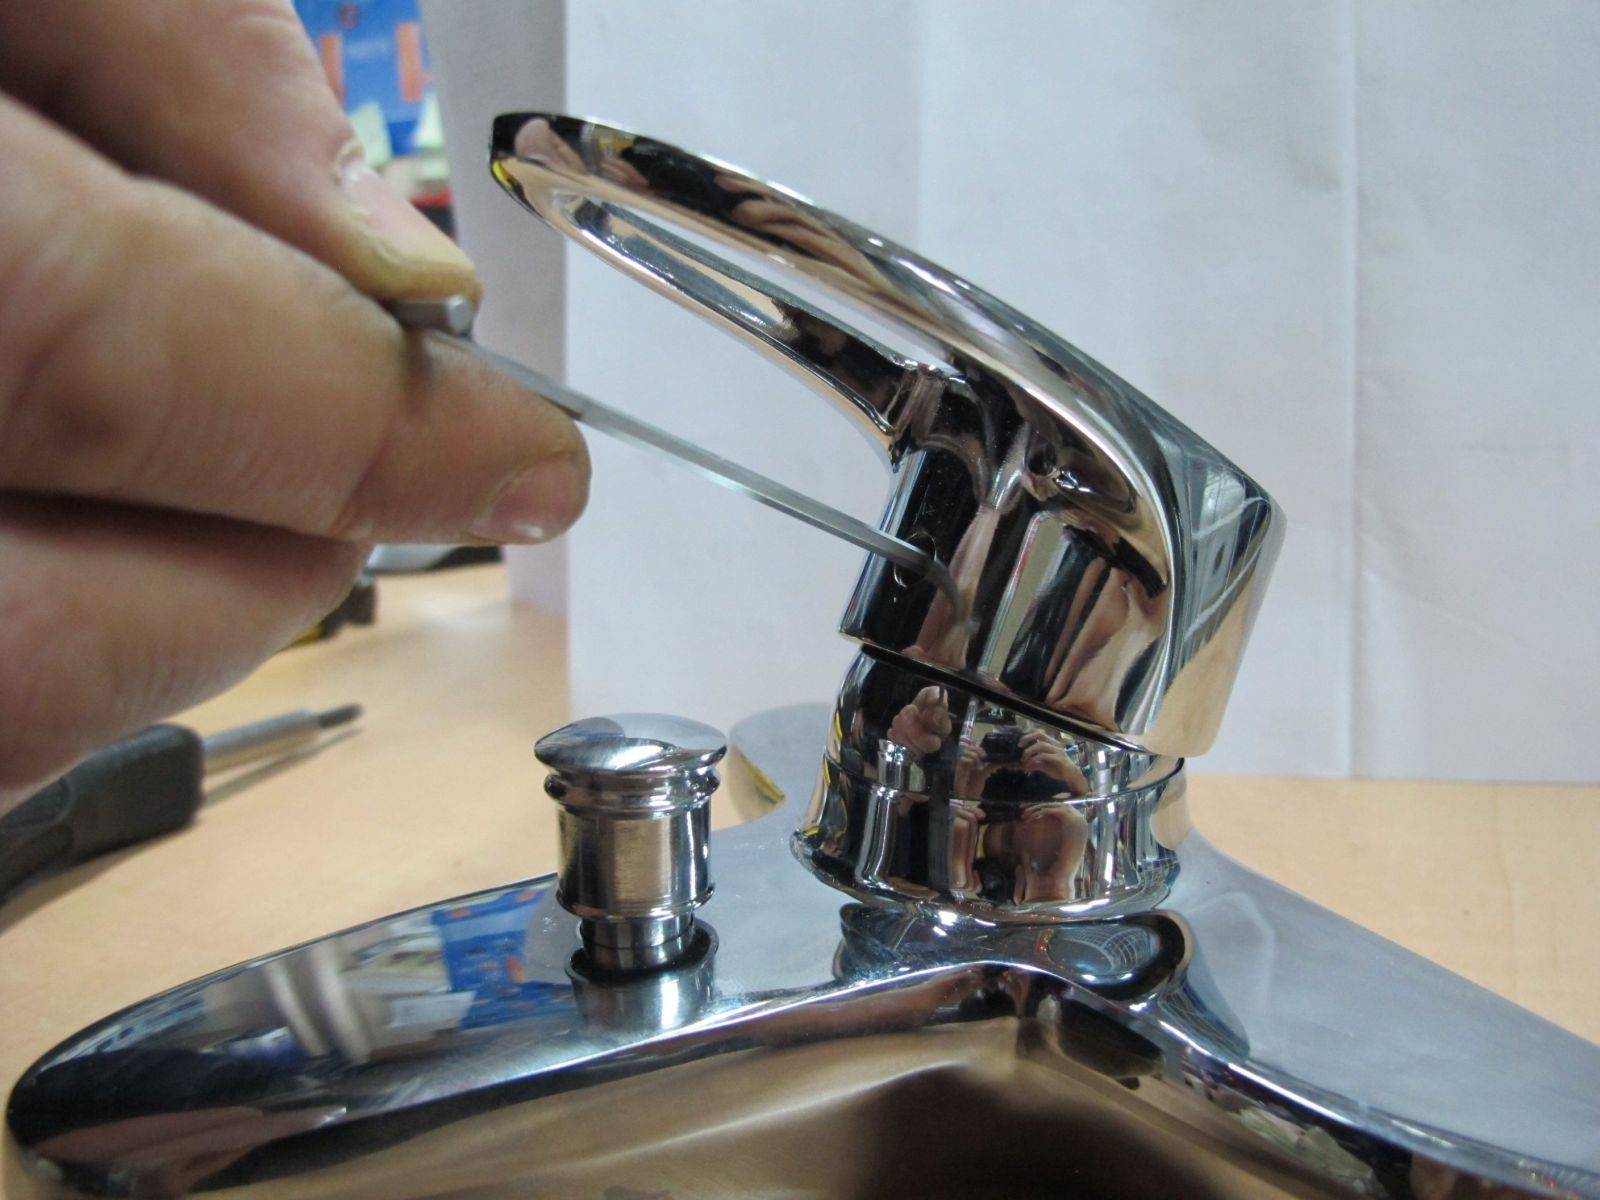 Как отремонтировать смеситель для ванной и видео как починить кран